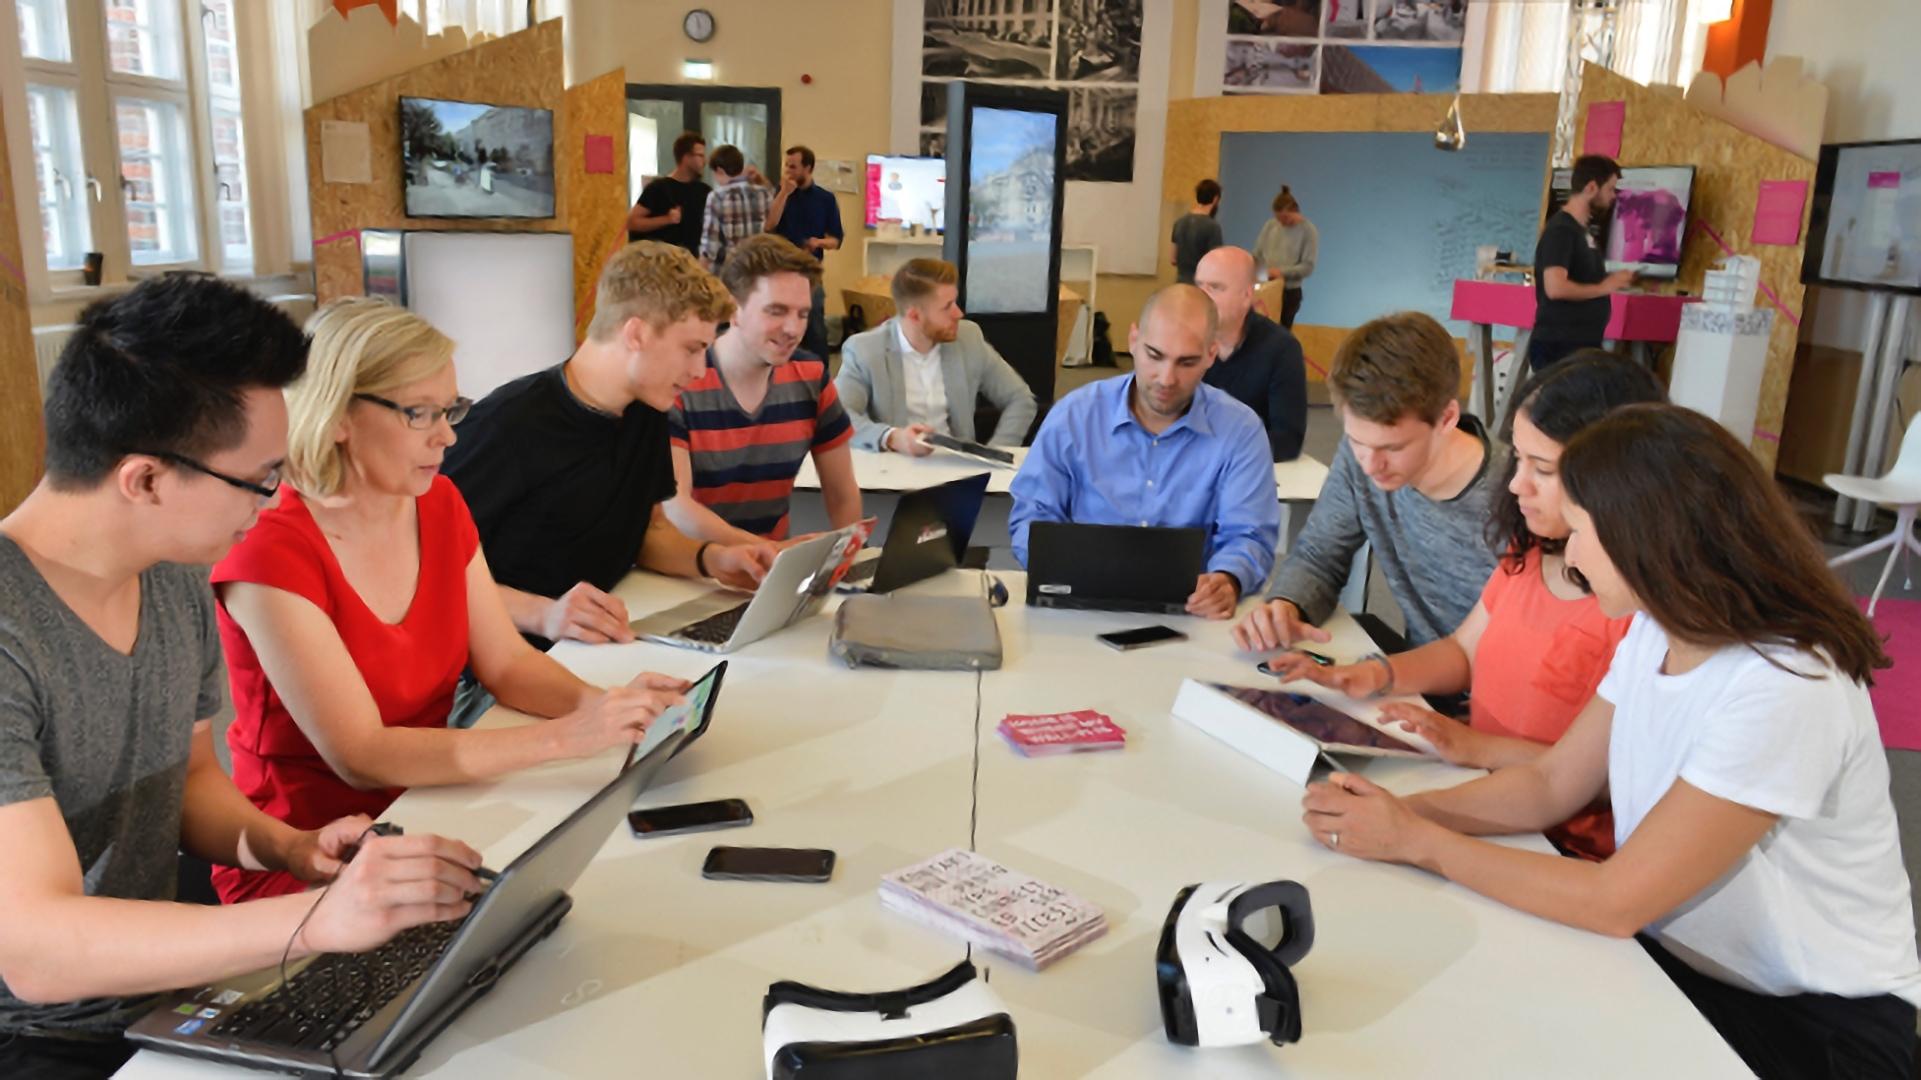 Teilnehmende eines Workshops sitzen mit Laptops gemeinsam am Tisch.